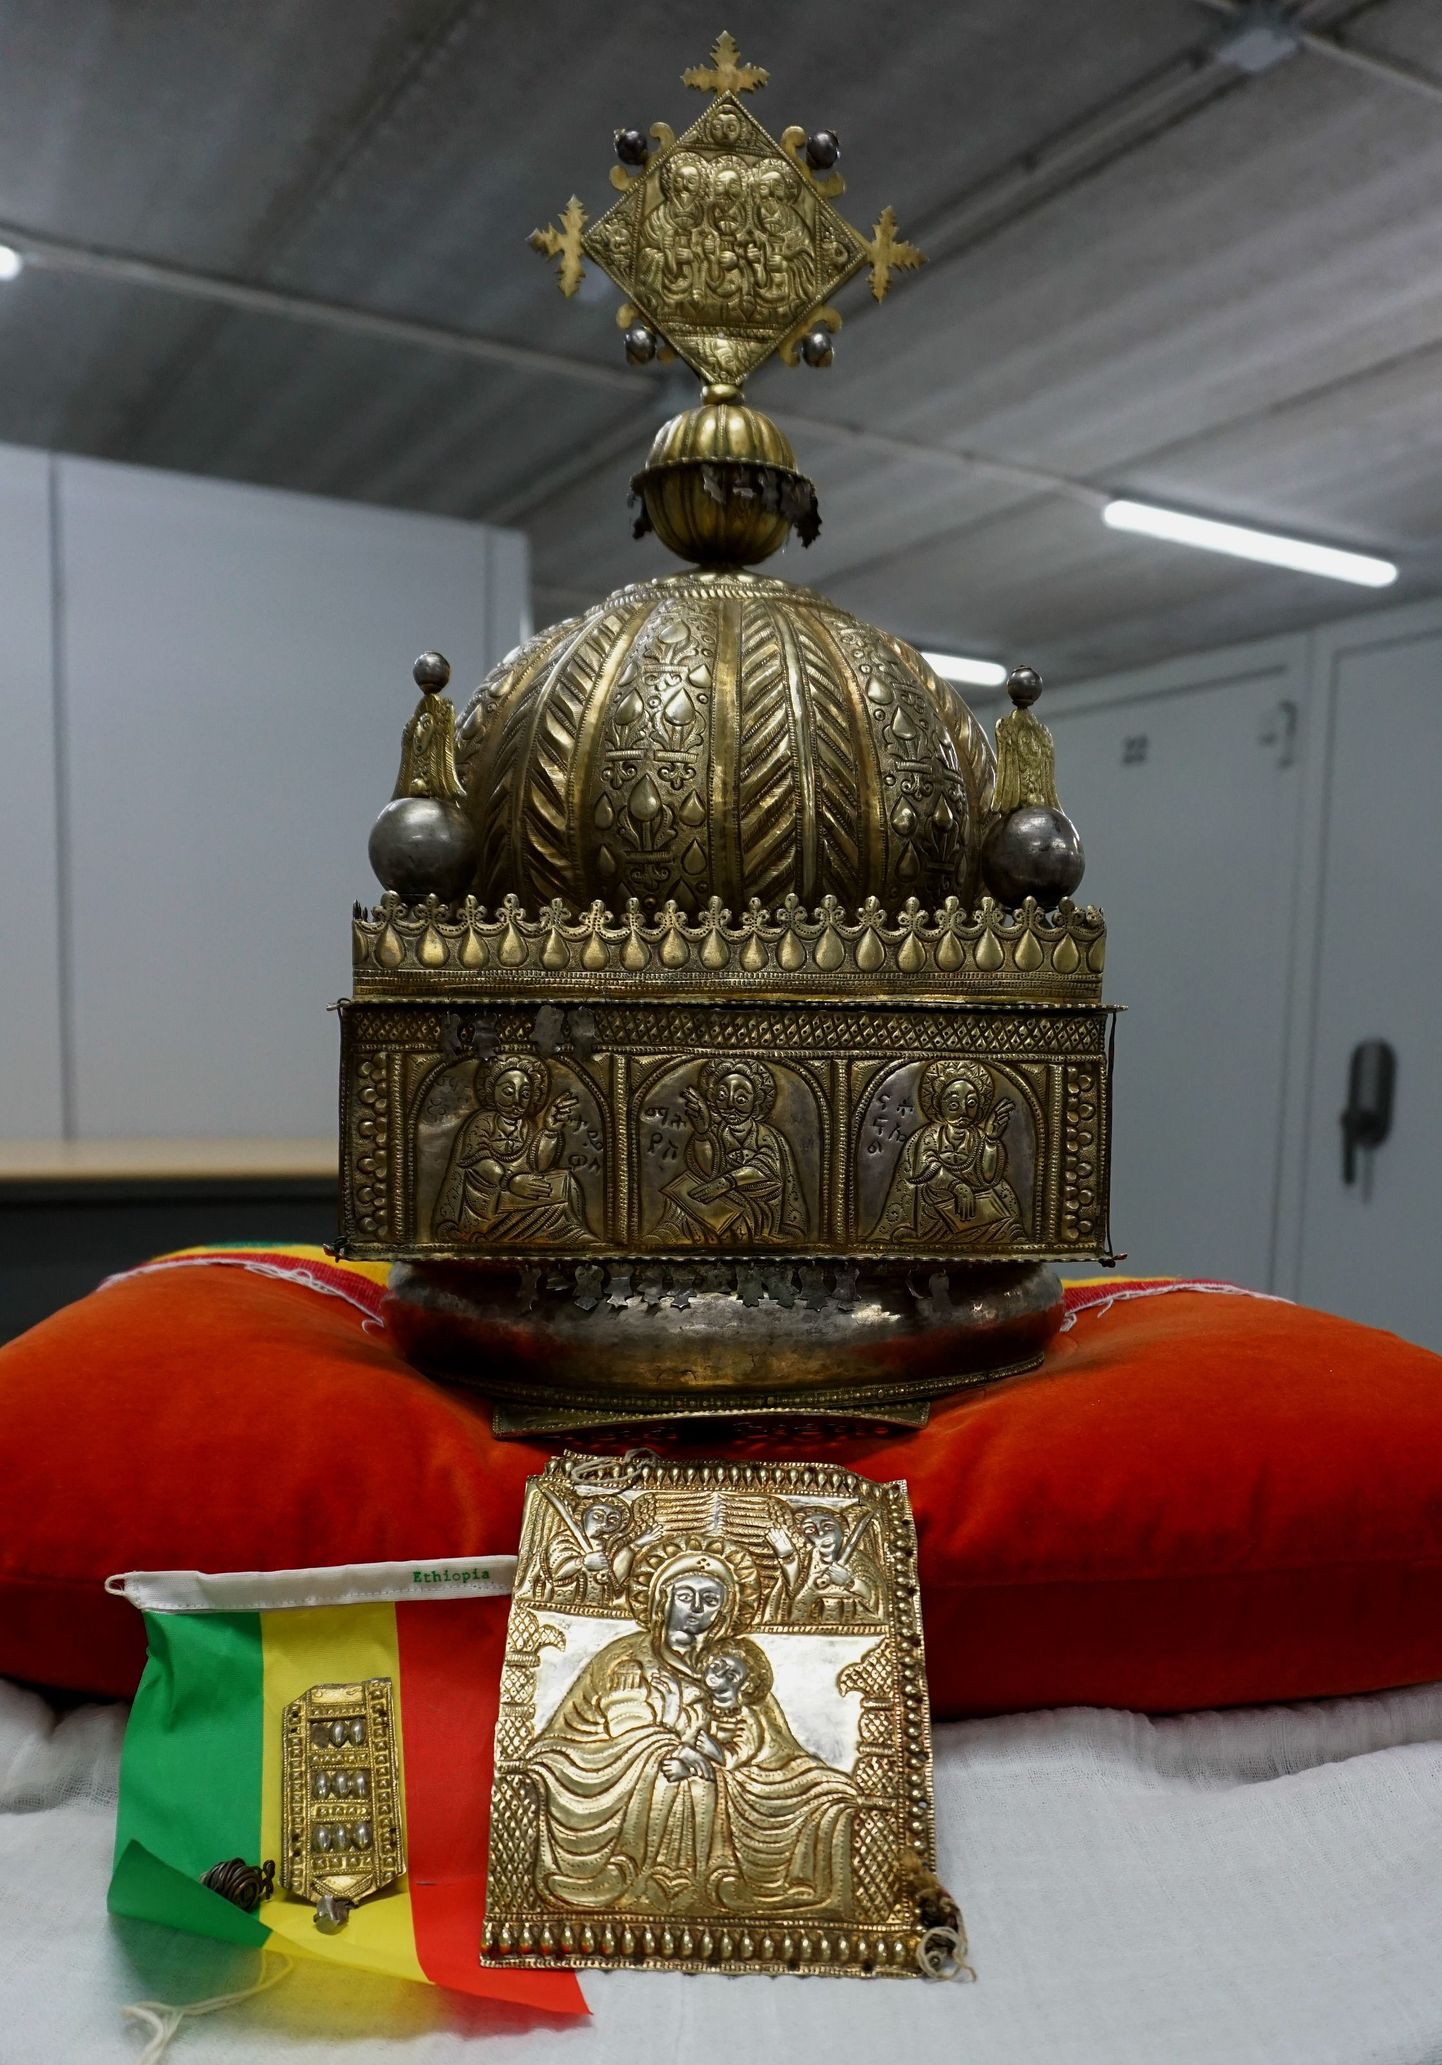 Etioopia 18. sajandi religioosne kroon